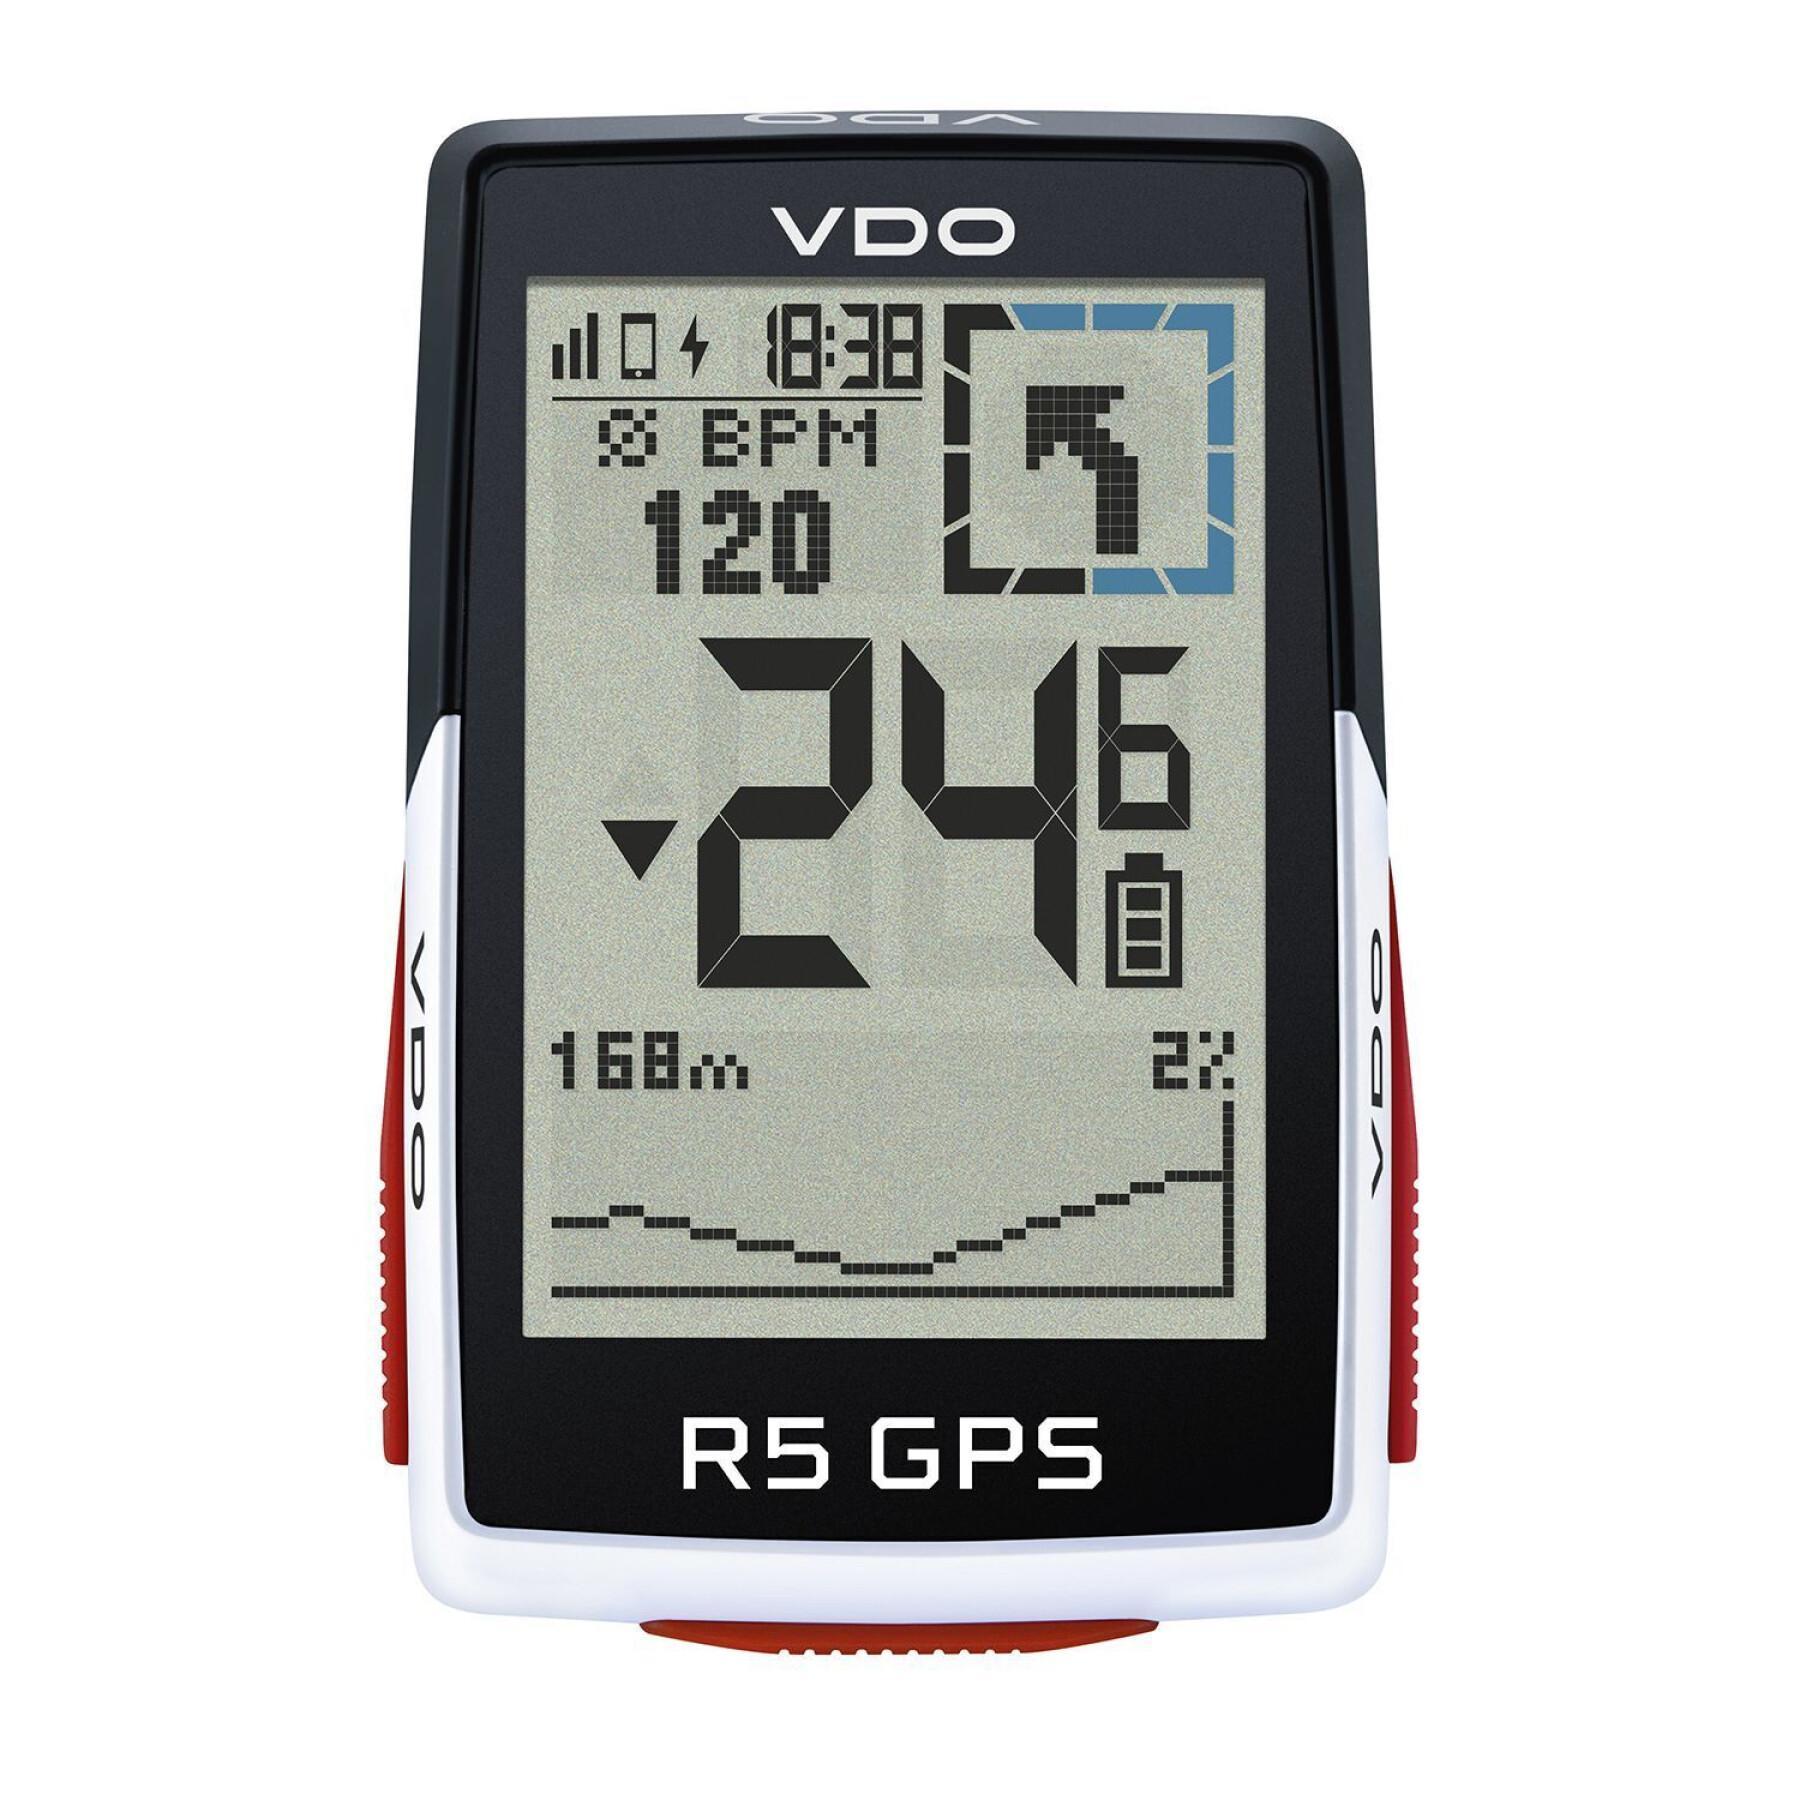 Teller VDO R5 GPS